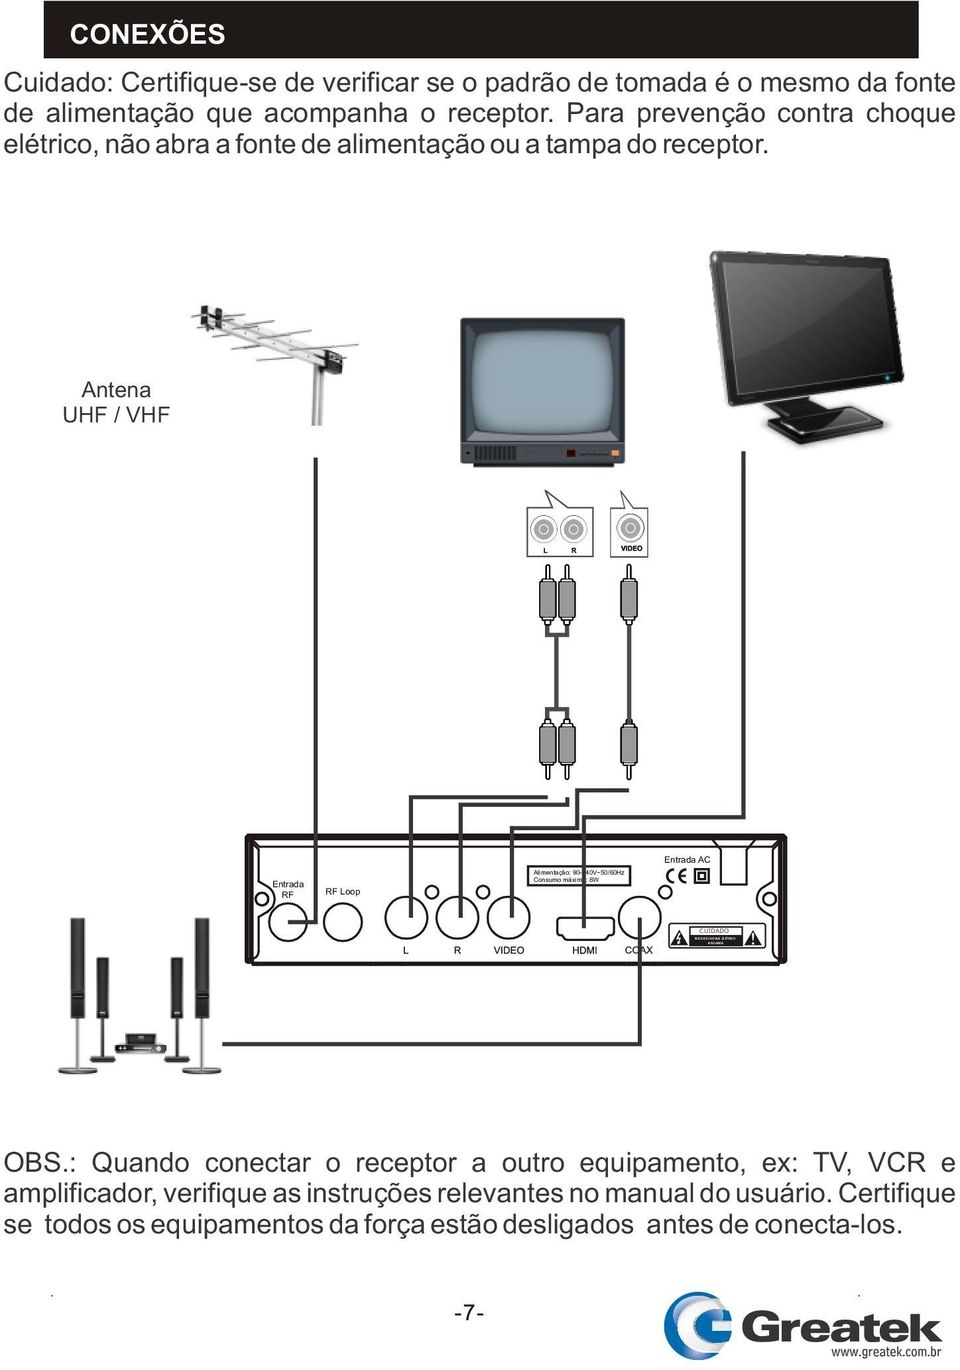 Antena UHF / VHF Entrada RF RF Loop Alimentação: 90-240V~50/60Hz Consumo máximo: 8W Entrada AC CUIDADO OBS.